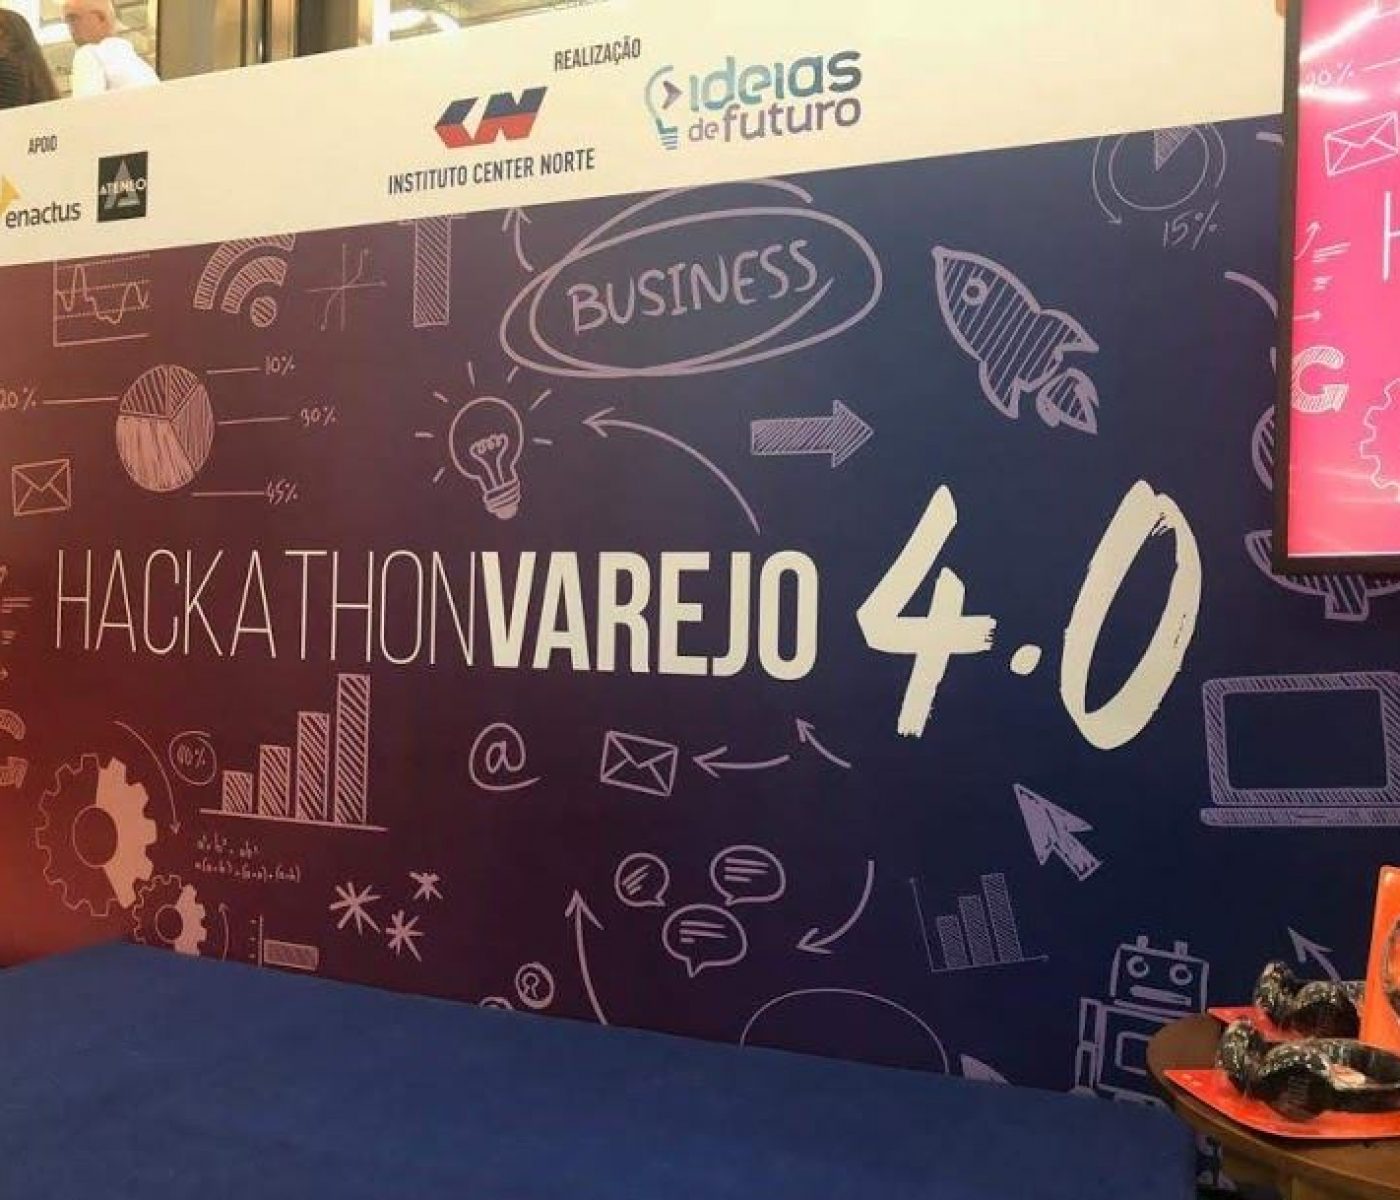 Hackathon Varejo 4.0